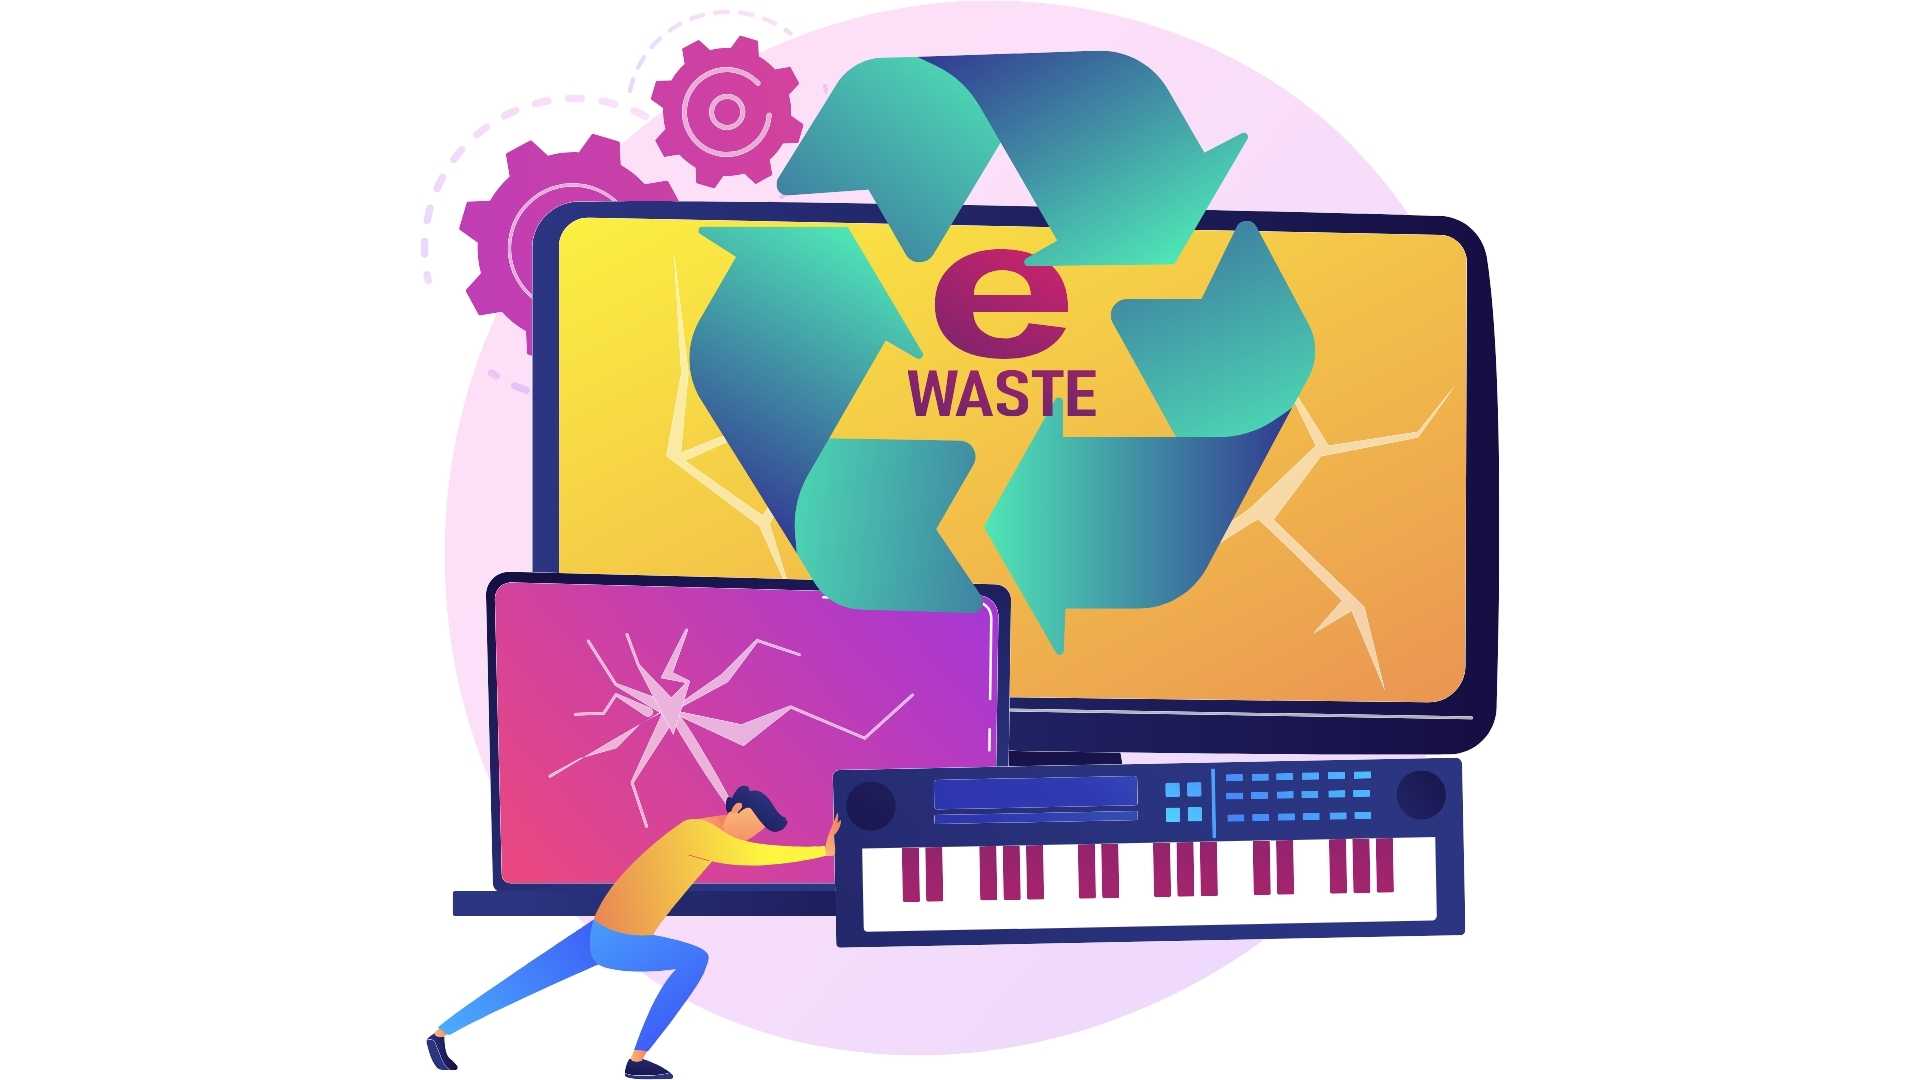 ilustração colorida que representa o problema do lixo eletrônico, com um personagem empurrando um laptop danificado, ao lado de um teclado musical descartado, em frente a um monitor de computador que exibe um símbolo de reciclagem.